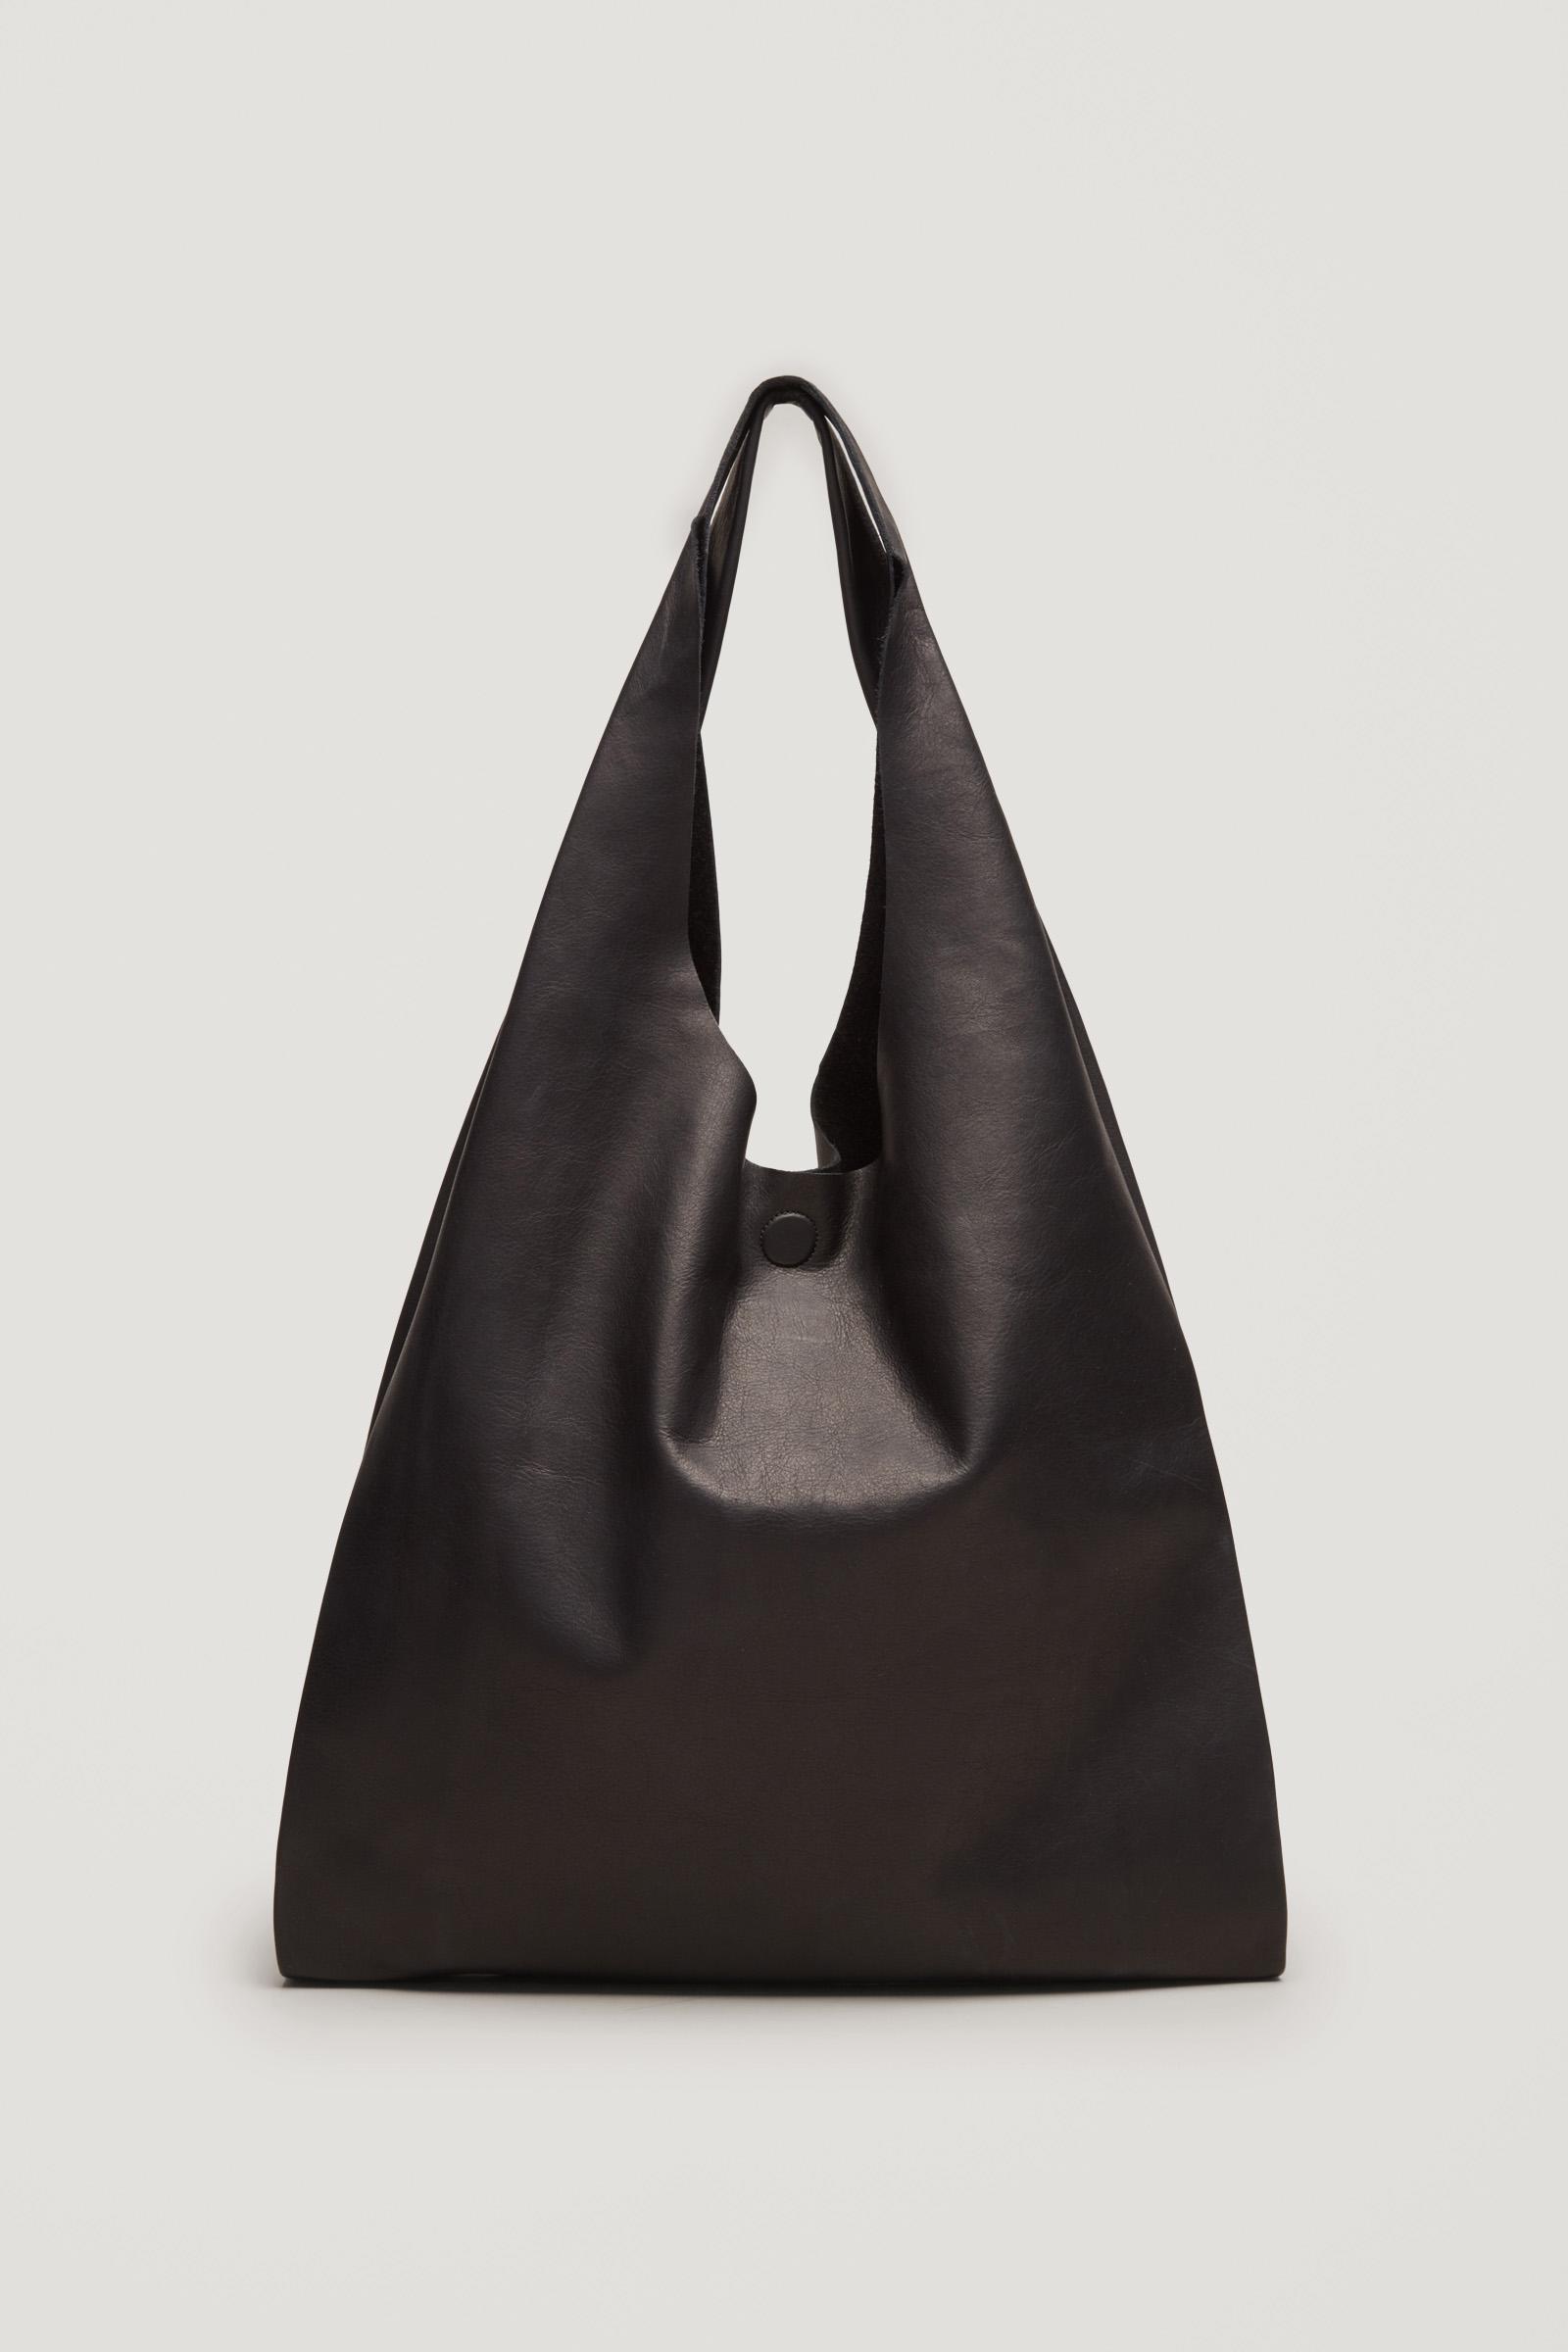 ・デザイン COS leather tote bag ブラック - ladida.se